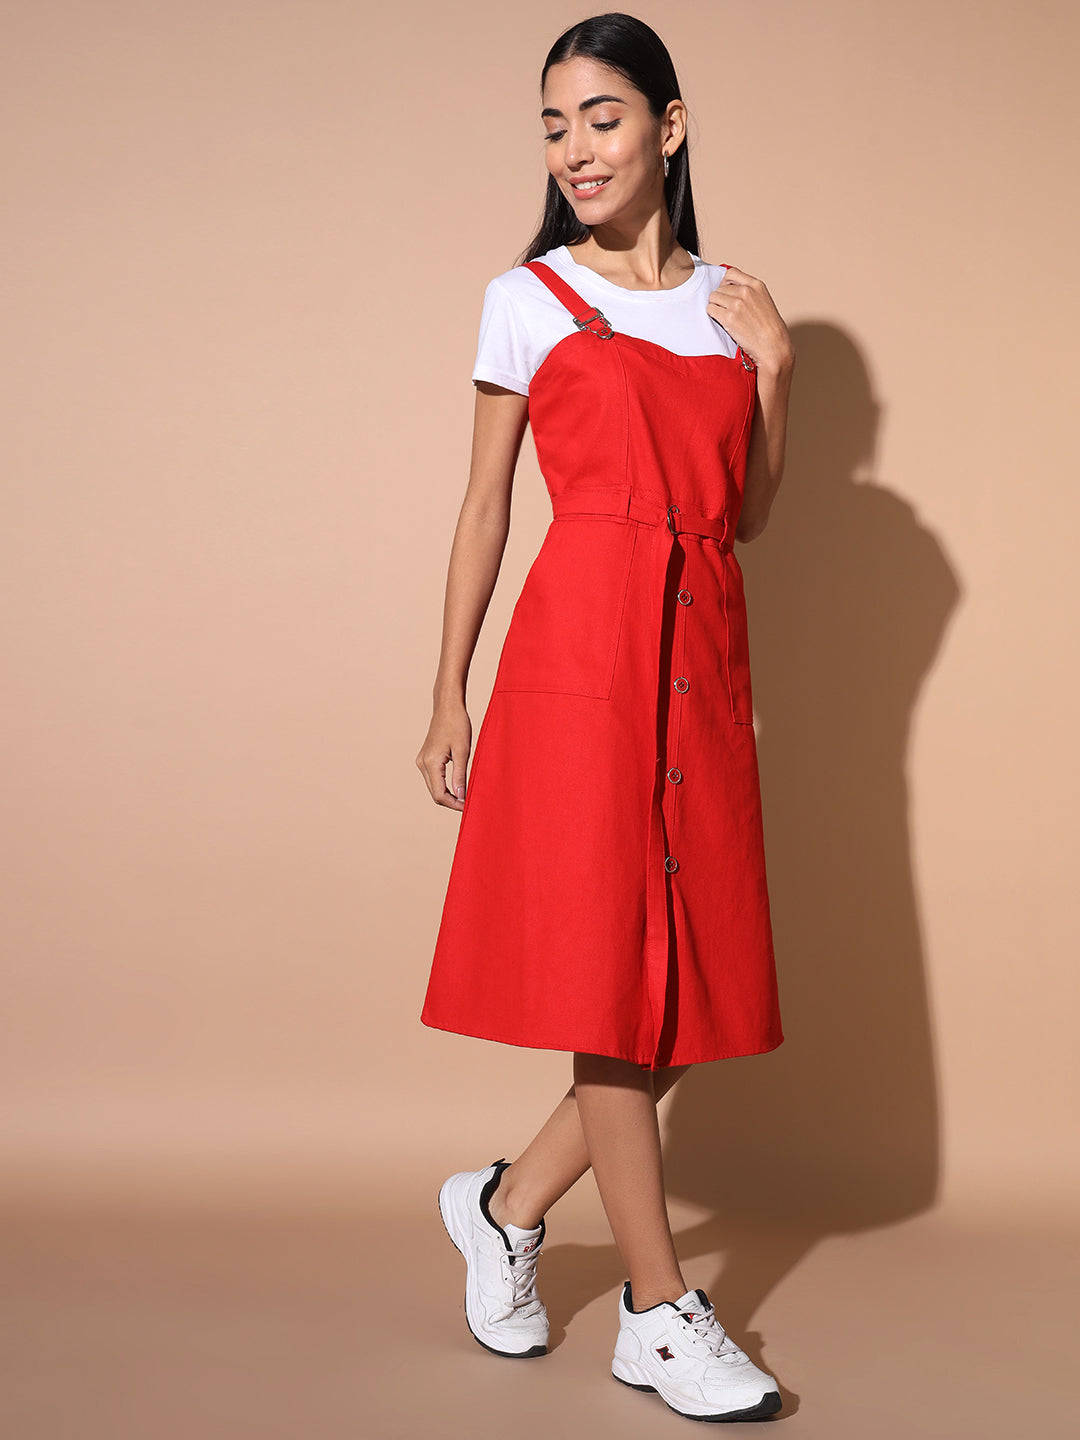 Glamoda A-Line Red Dress